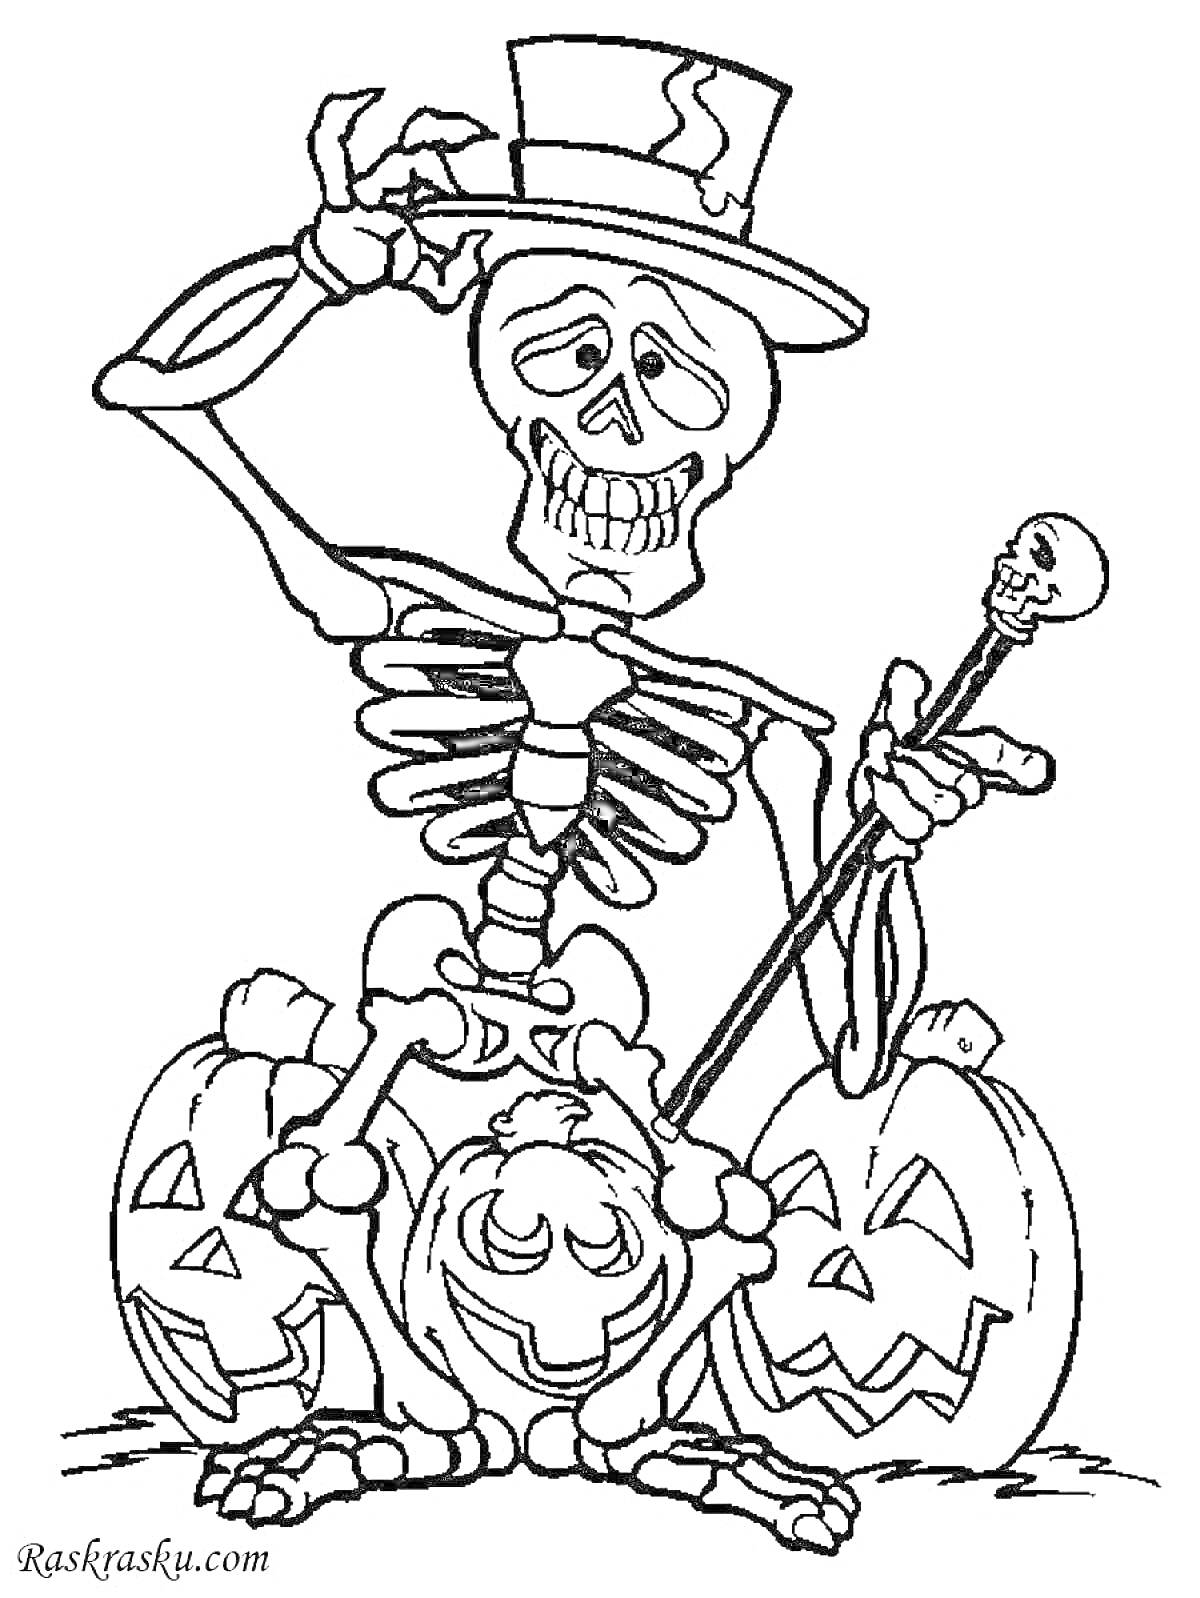 Раскраска Скелет в шляпе с тростью и тремя тыквами